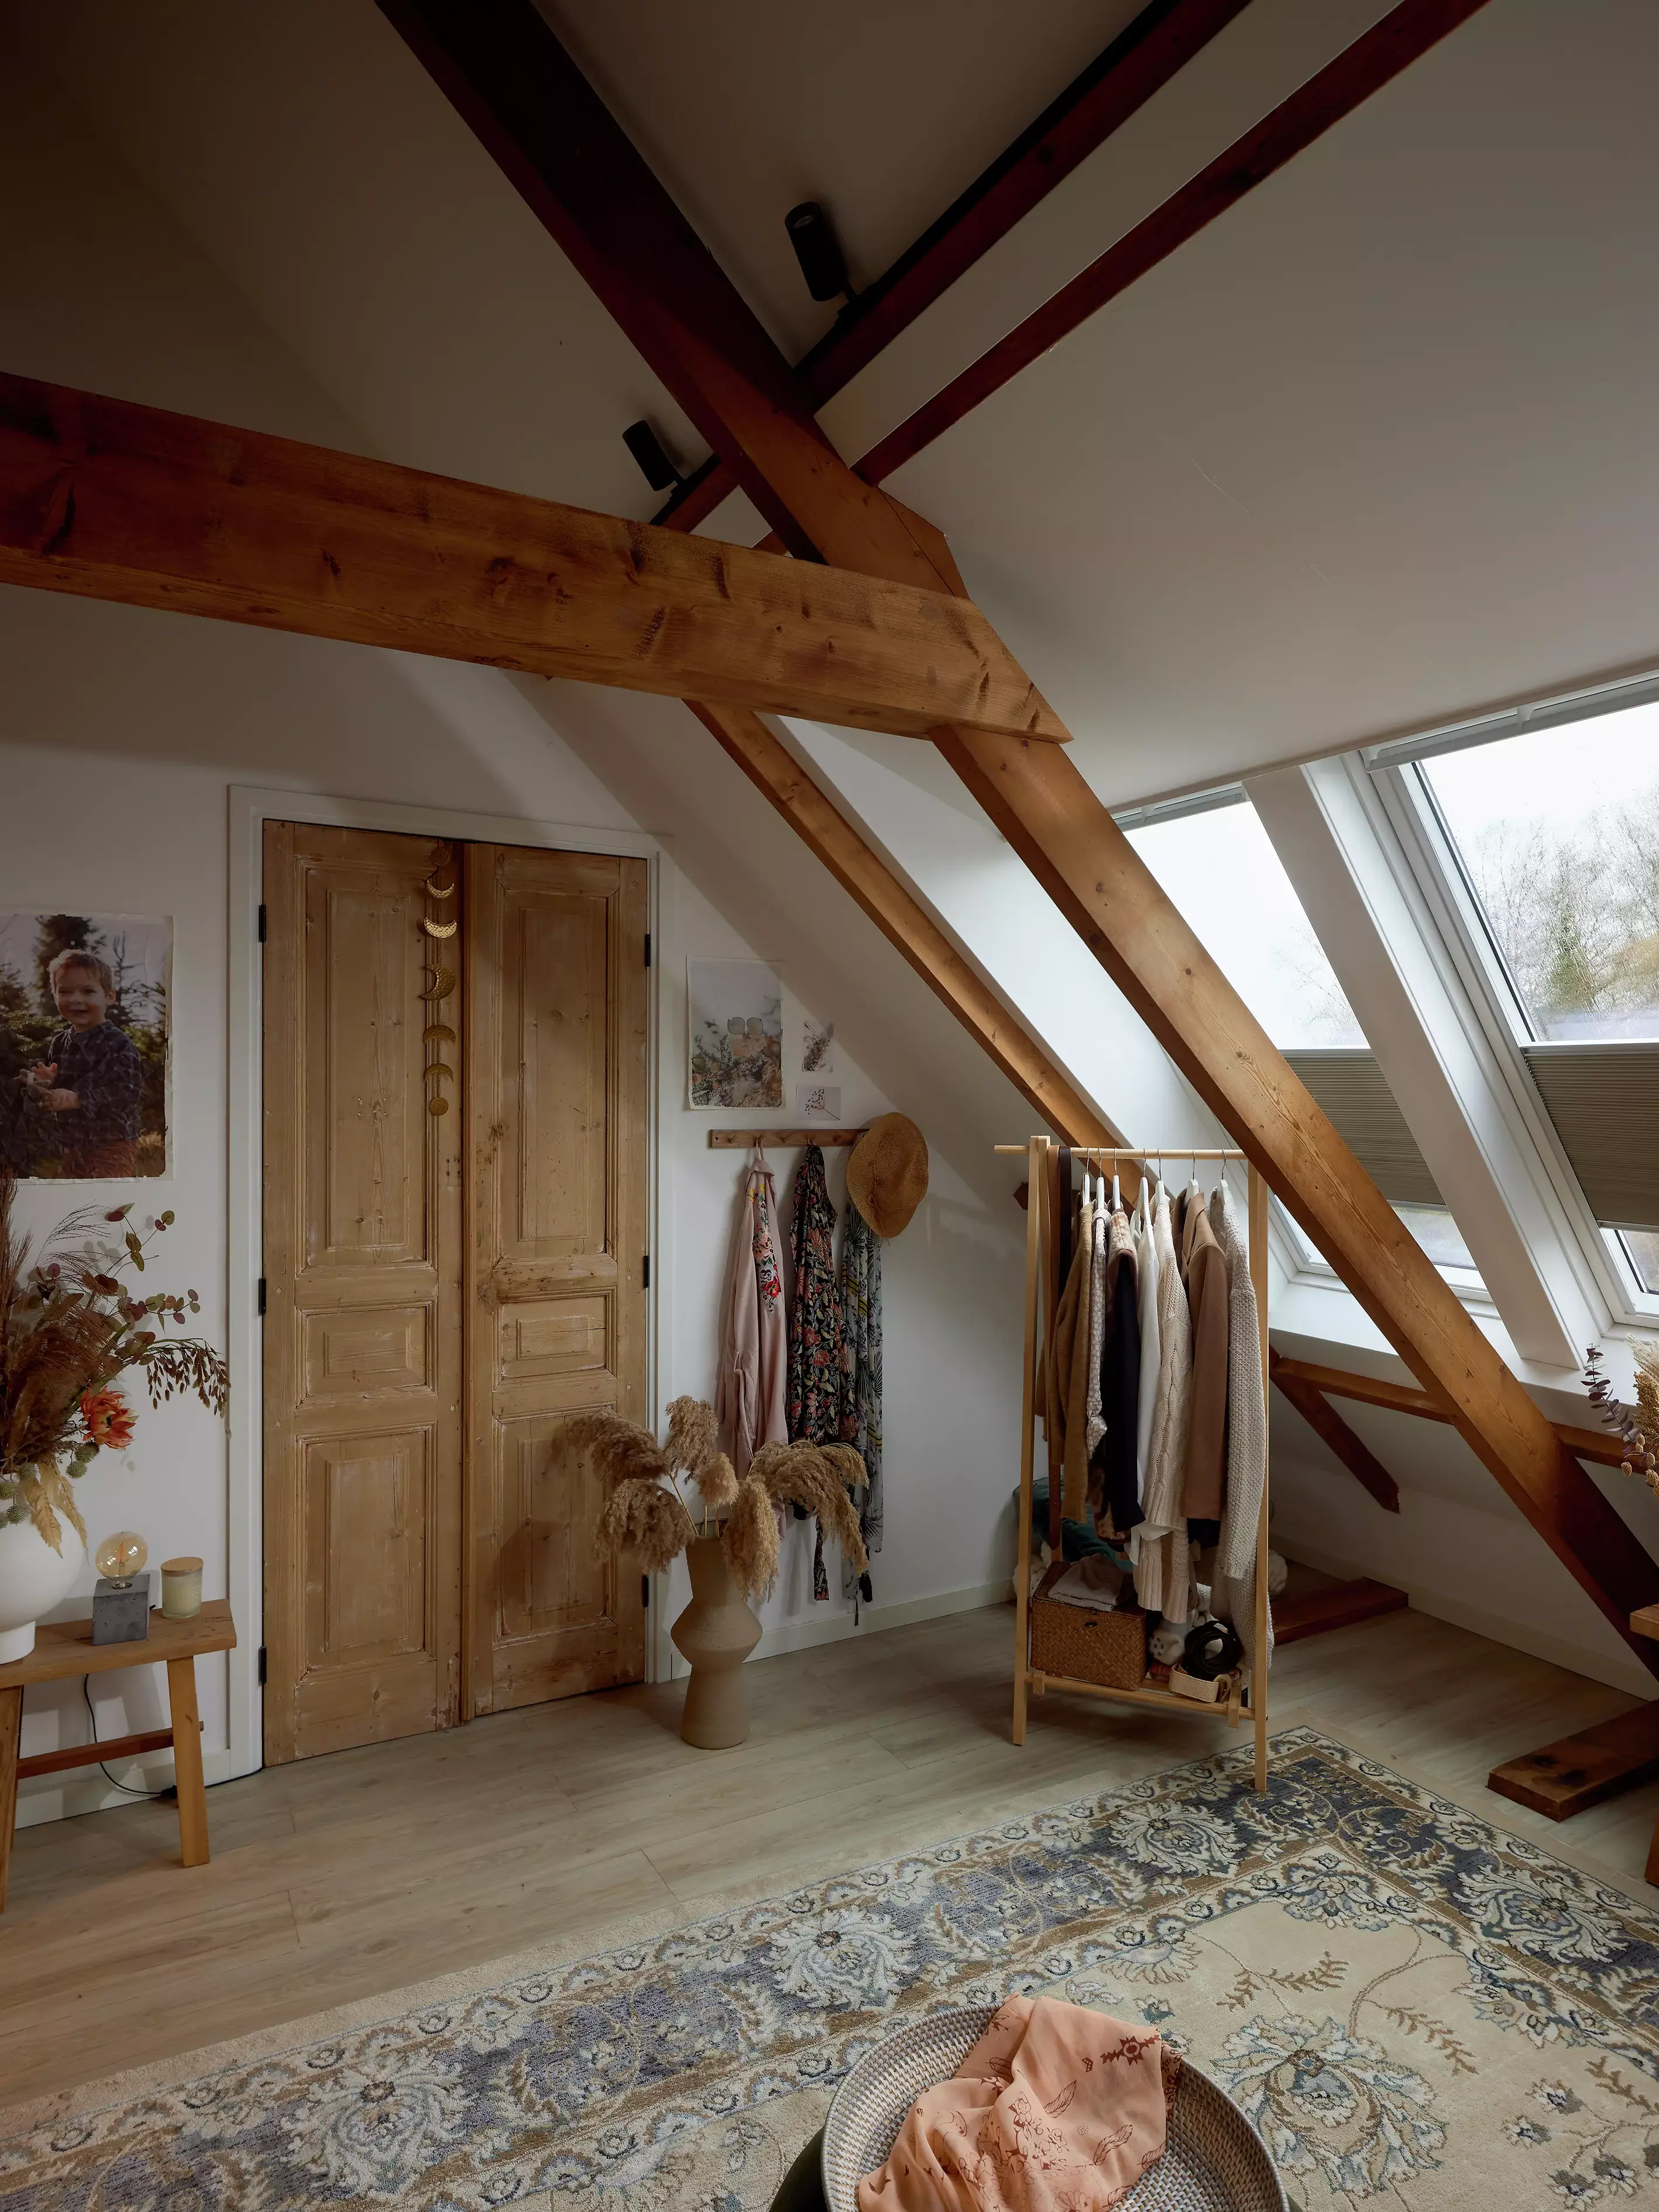 Chambre mansardée rustique avec des poutres en bois et une fenêtre de toit VELUX, une armoire vintage et un tapis à motifs.